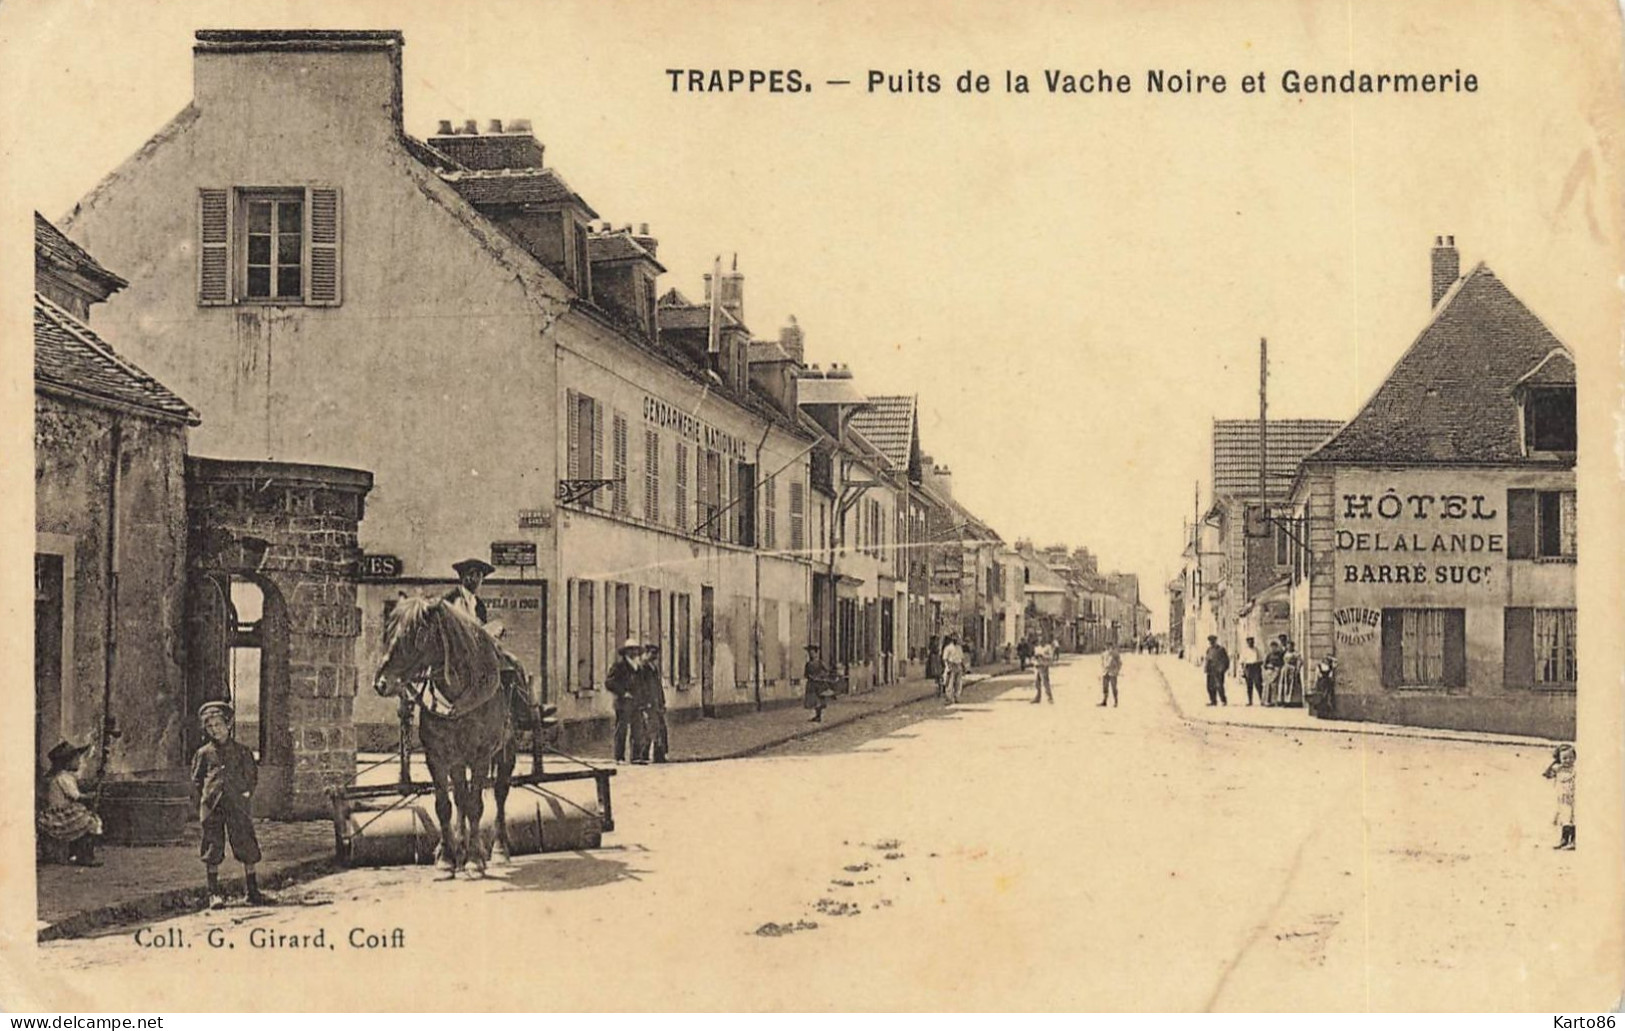 Trappes * Puits De La Vache Noire Et Gendarmerie * Rue Cheval Rouleau Cylindre * Hôtel DELALANDE BARRE Succr - Trappes